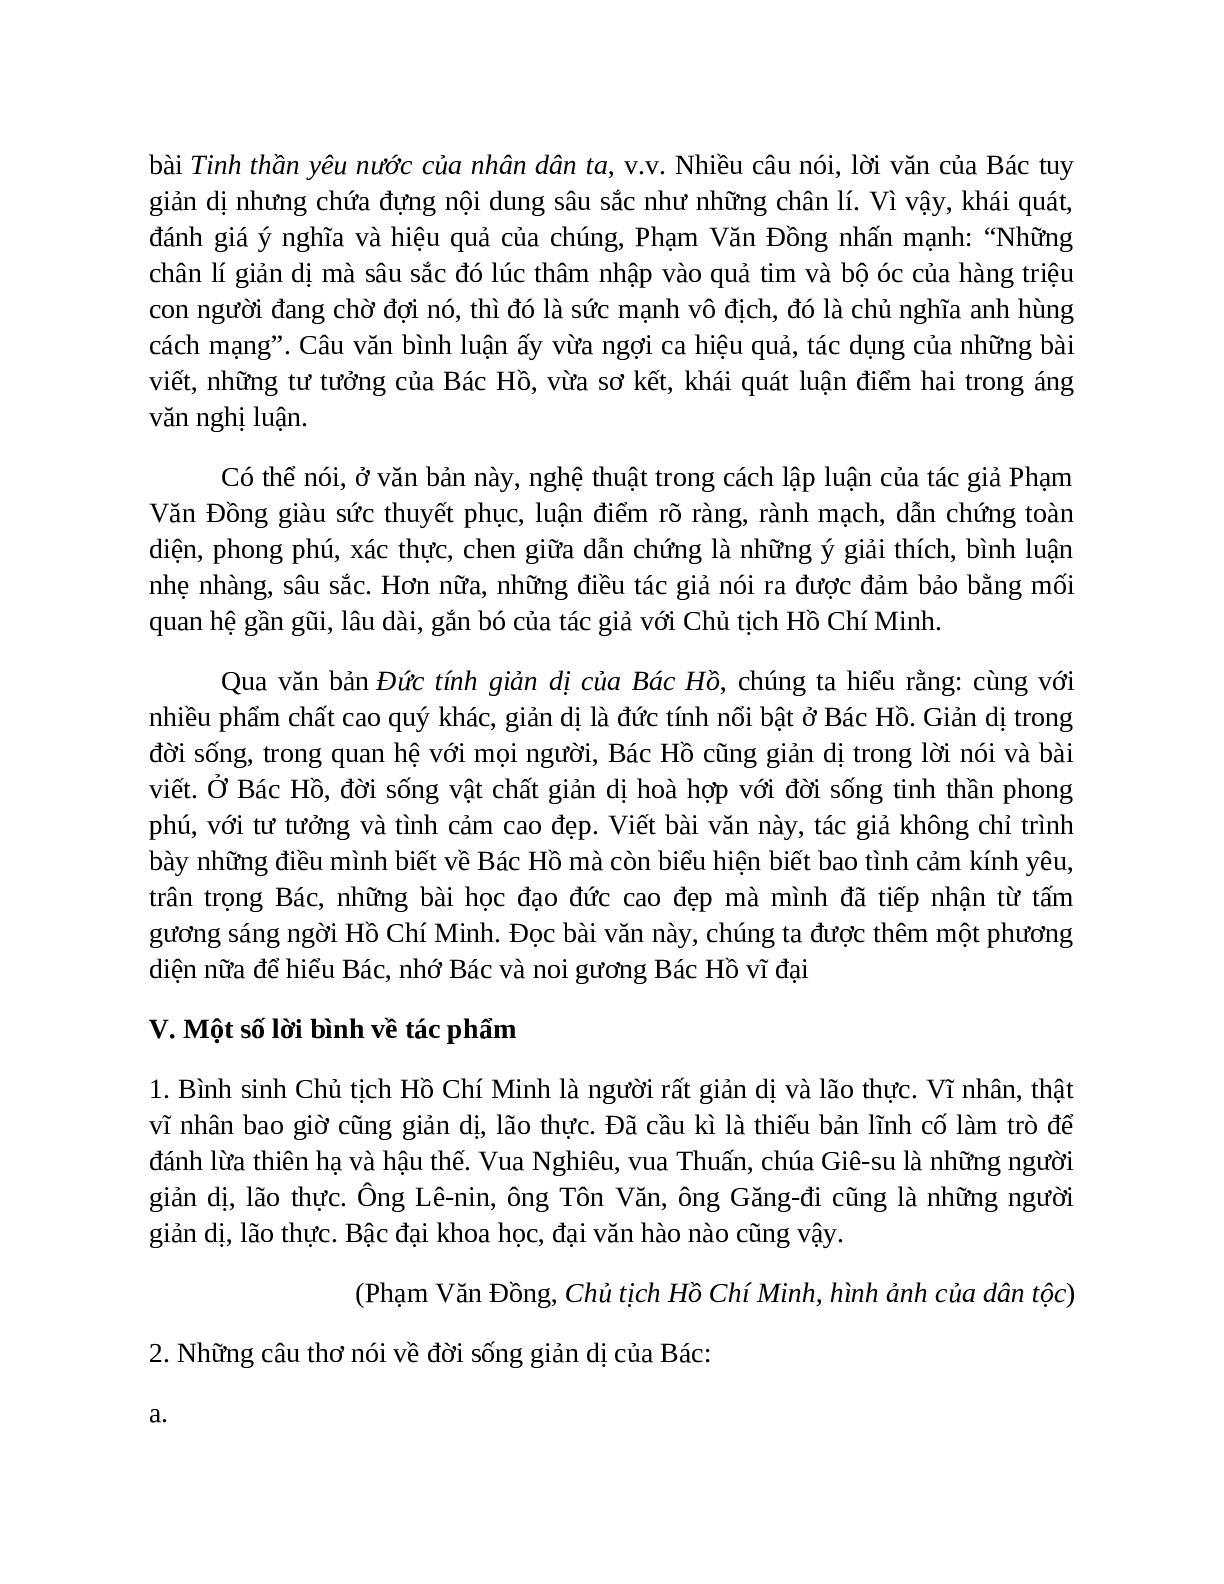 Sơ đồ tư duy bài Đức tính giản dị của Bác Hồ dễ nhớ, ngắn nhất - Ngữ văn lớp 7 (trang 7)